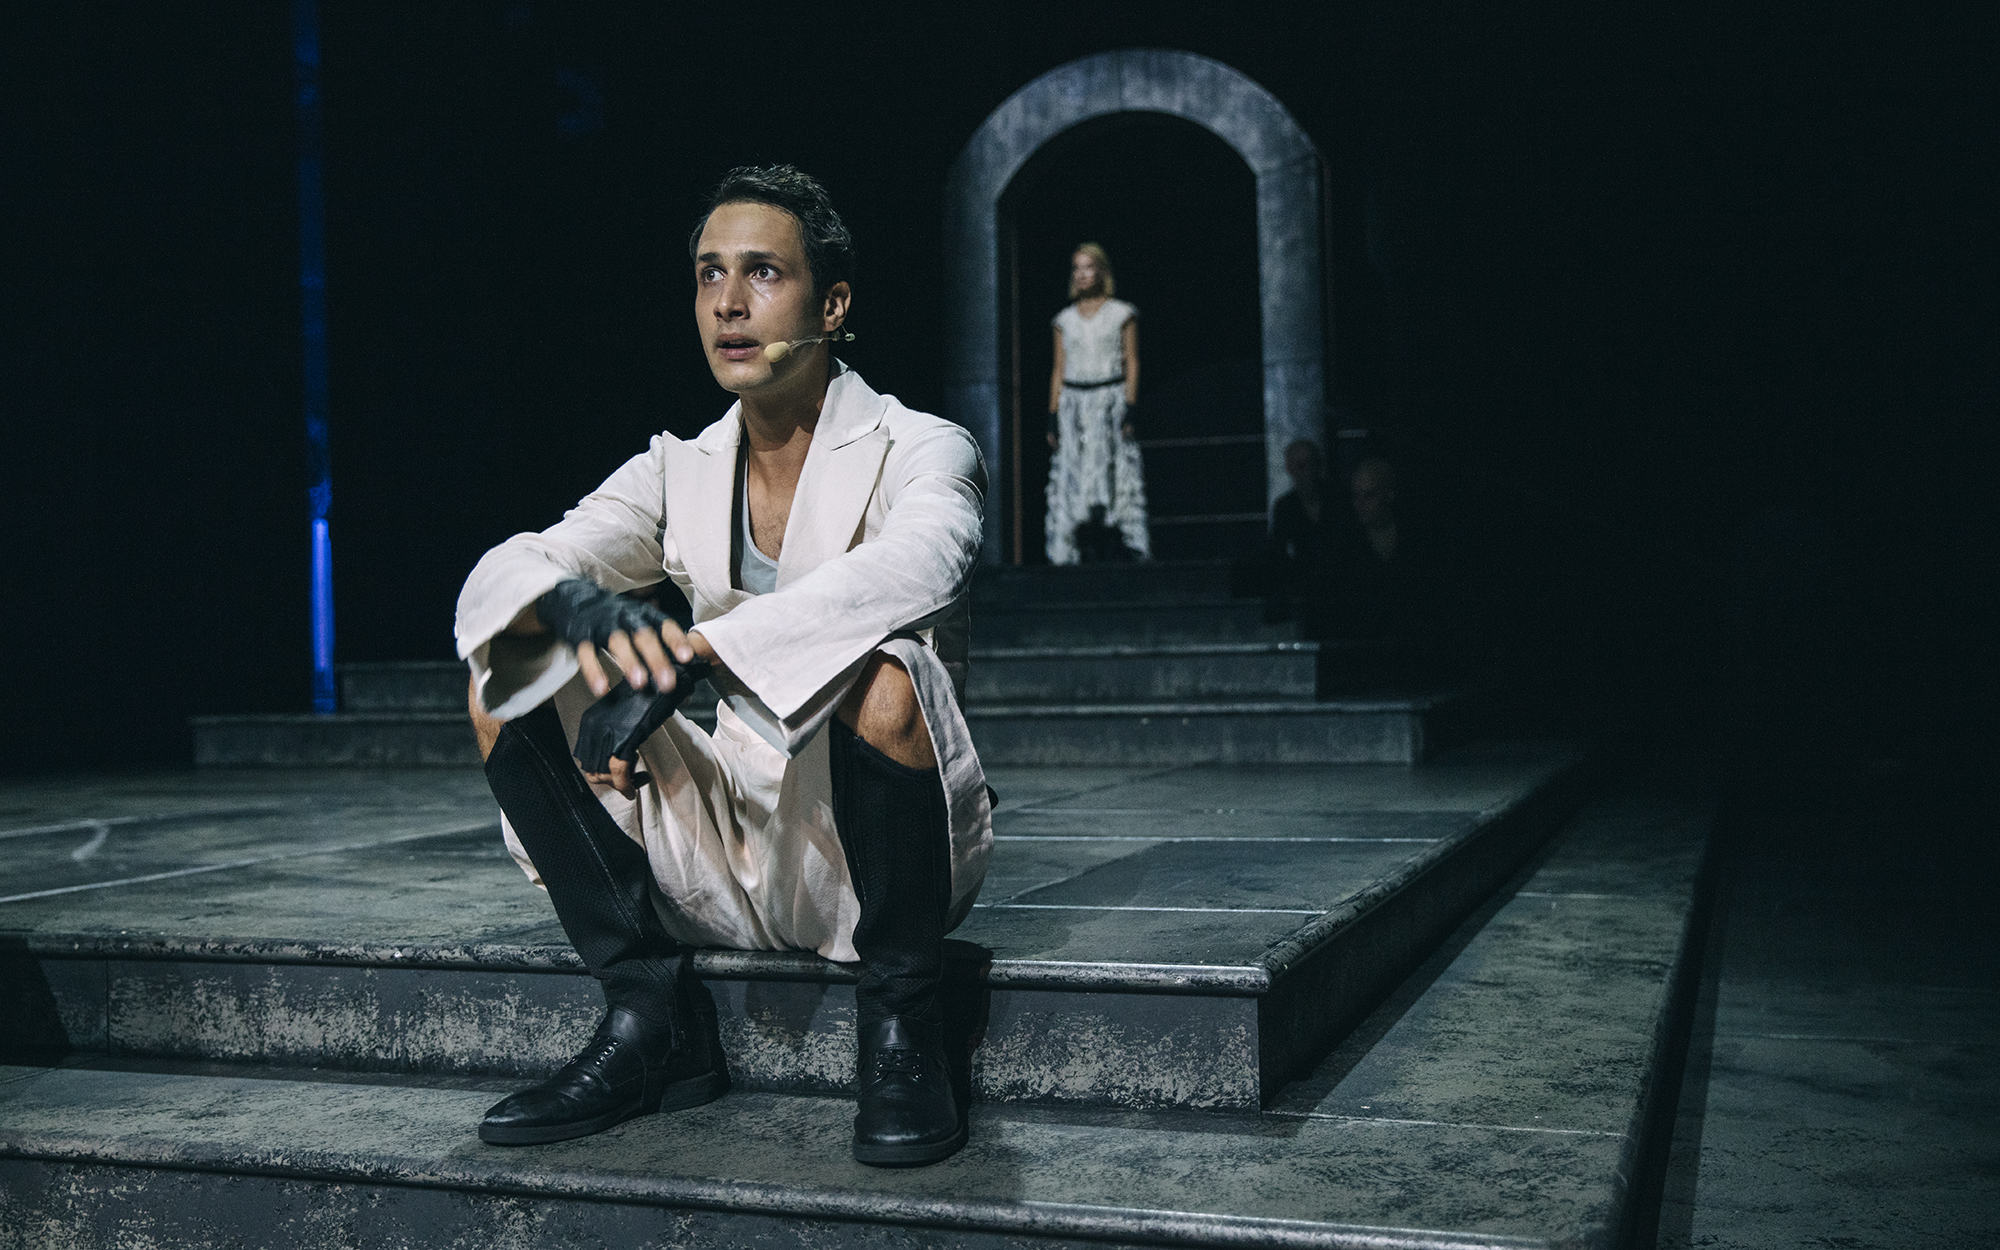 Mladi Kalaf (Voranc Boh) sedi na stopnicah. Opazuje ga Turandot (Viktorija Bencik Emeršič). Avtor fotografije: Peter Giodani.